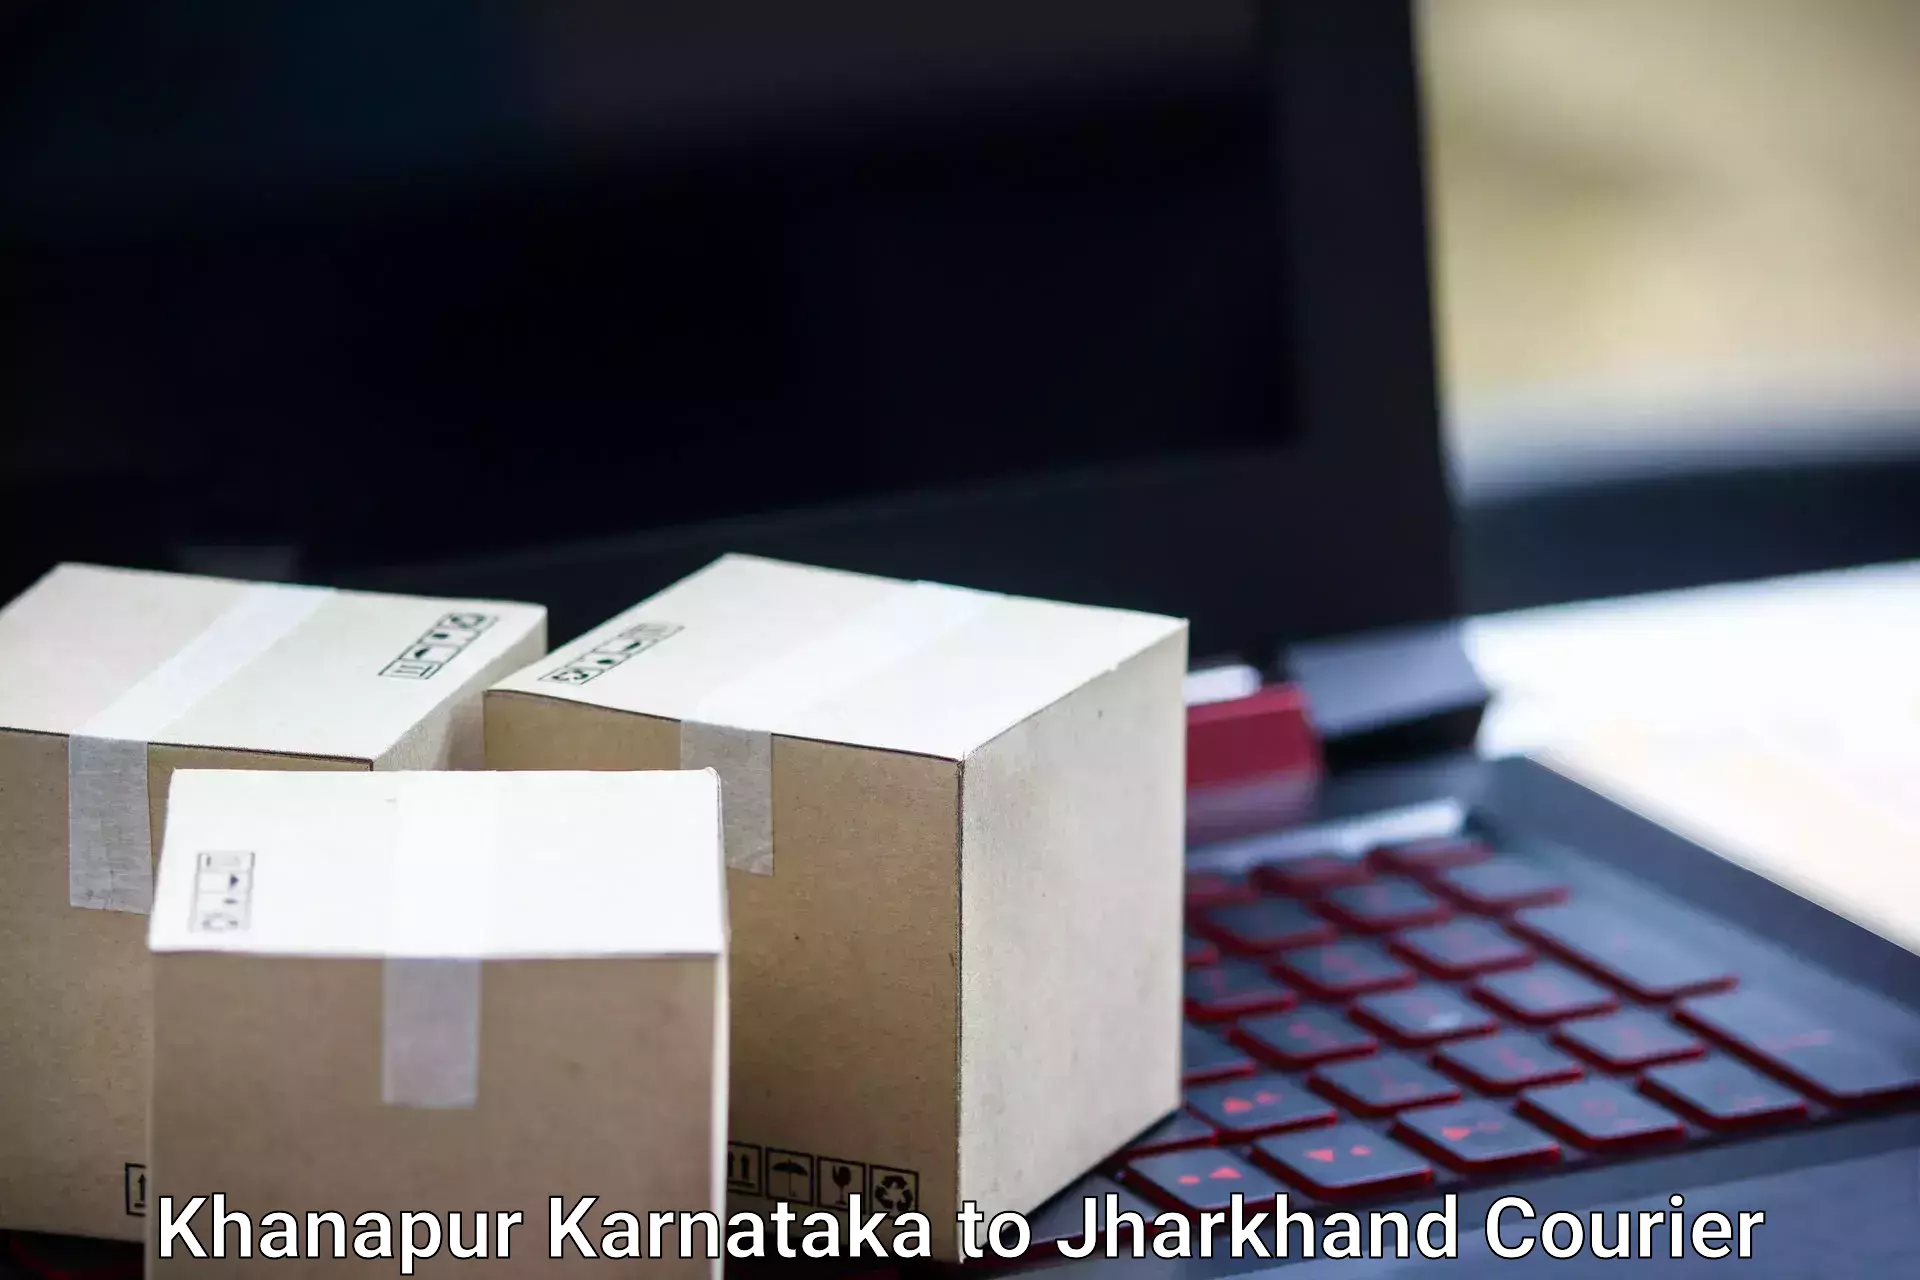 Urgent luggage shipment Khanapur Karnataka to Godabar Chatra